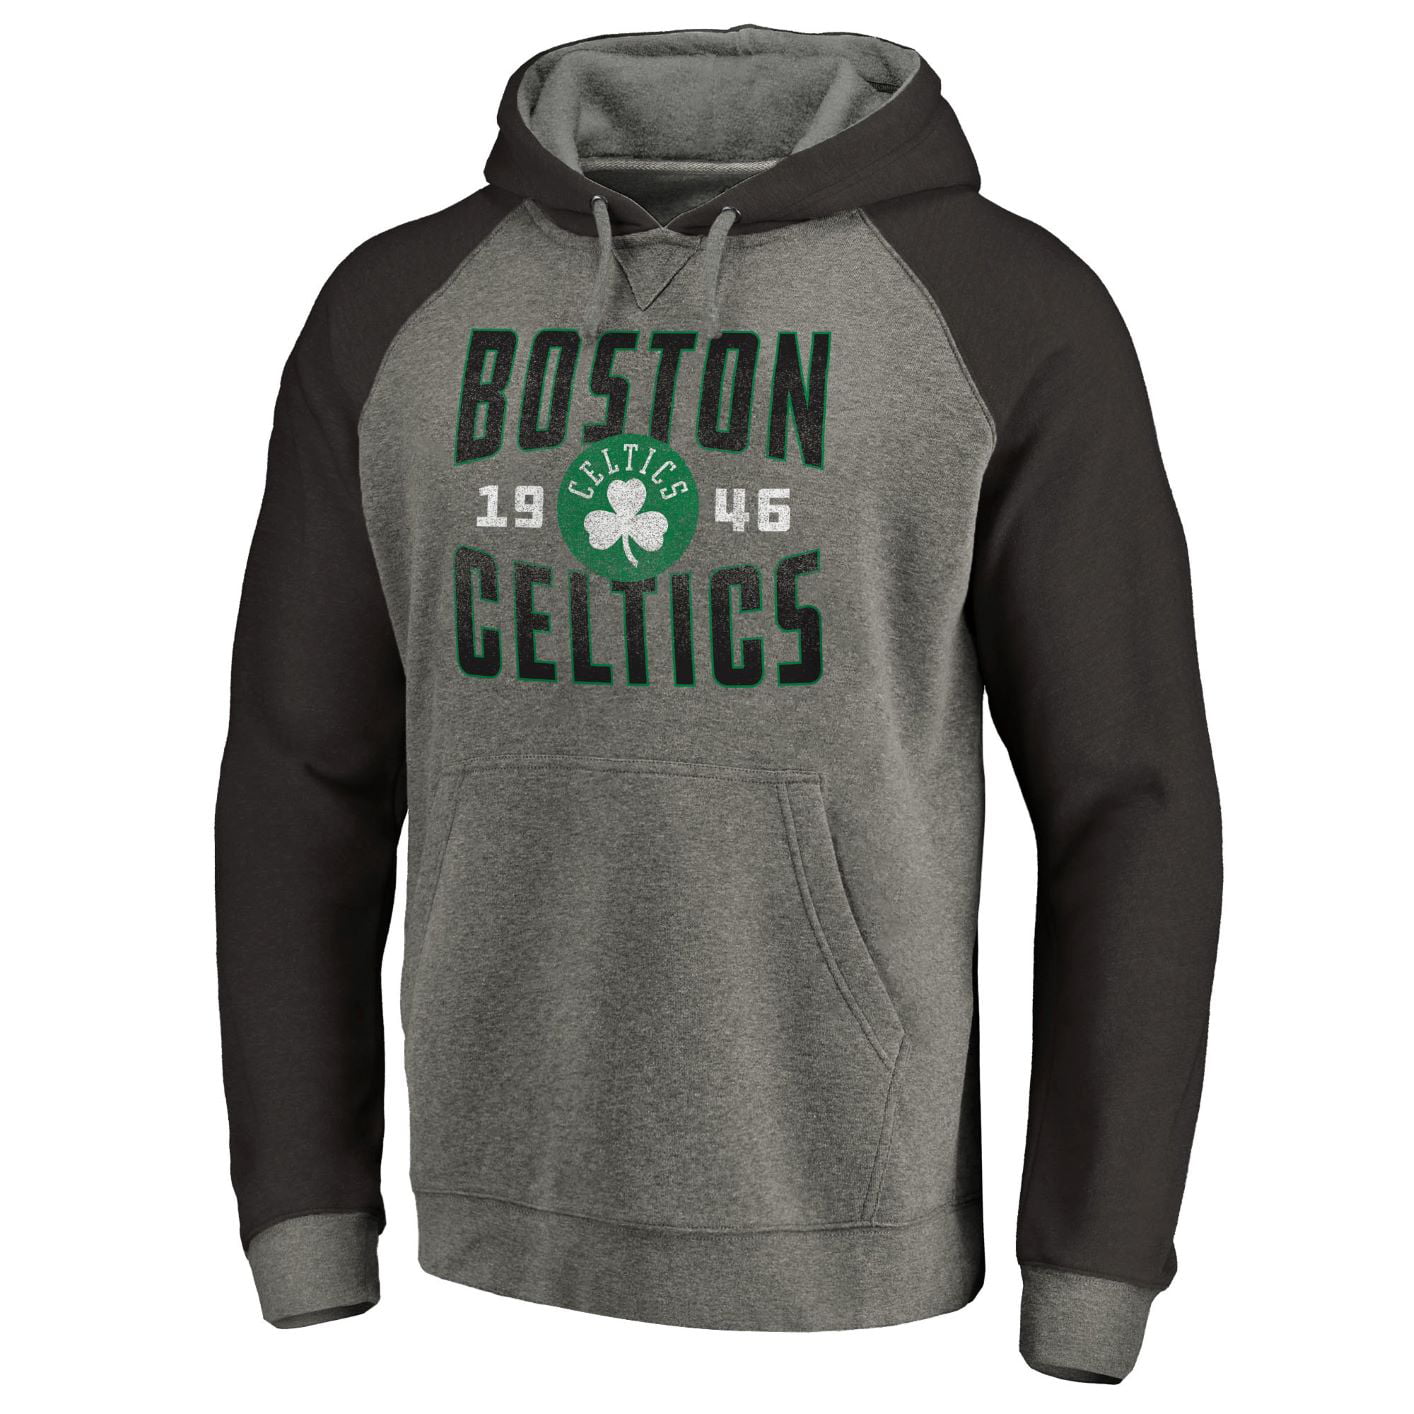 boston celtic gear